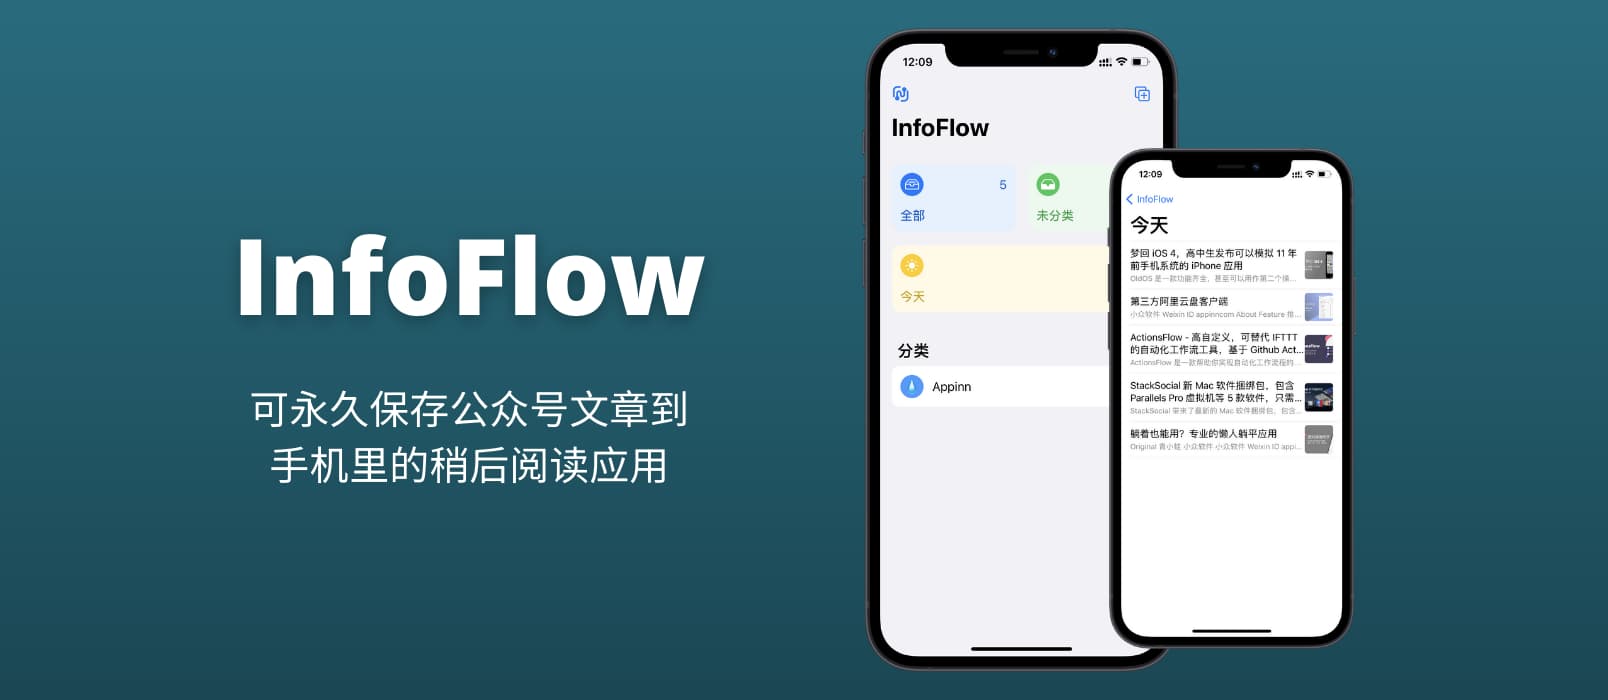 InfoFlow - 可永久保存公众号文章到手机里的稍后阅读应用[iPhone/iPad]